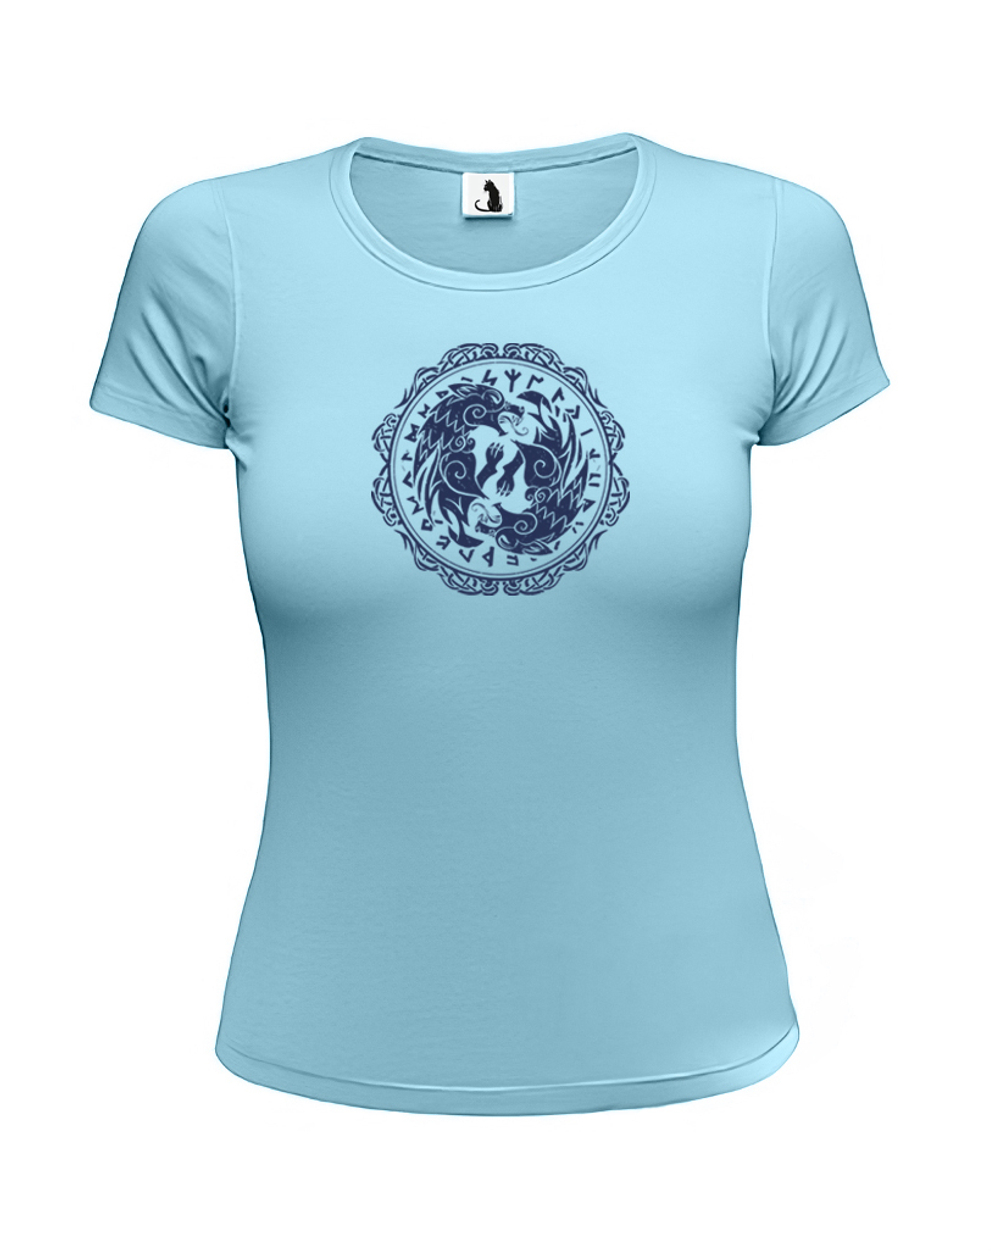 Скандинавская футболка с волком и рунами женская приталенная голубая с синим рисунком